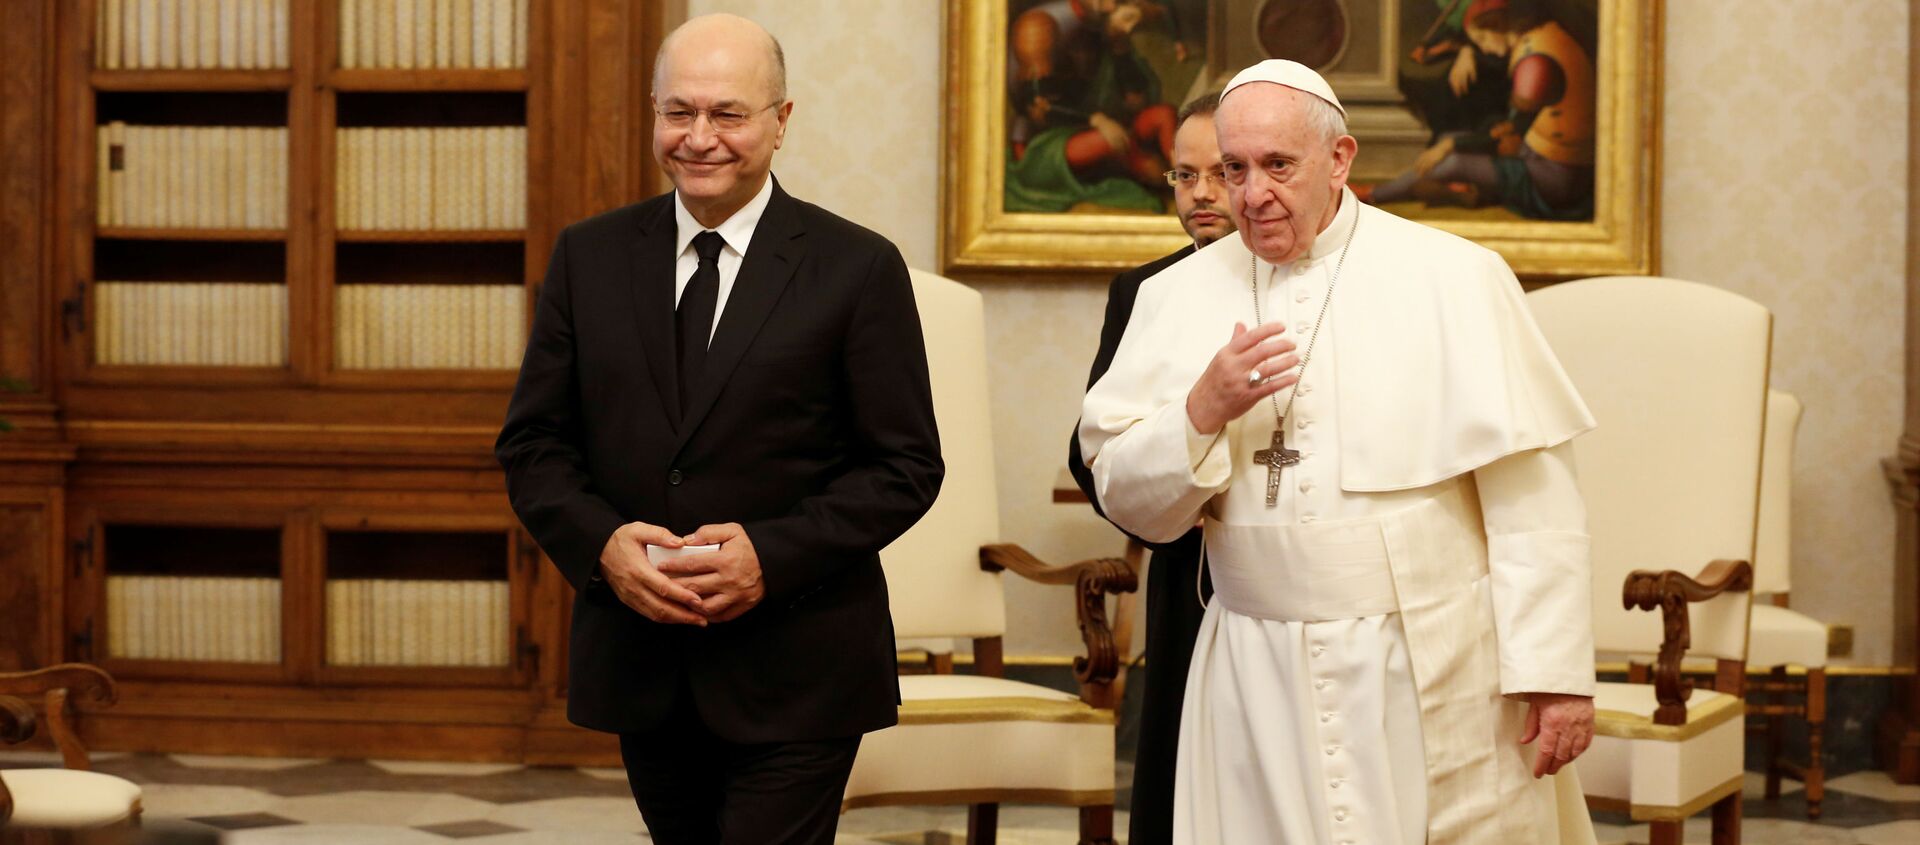 El presidente de Irak, Barham Salih, junto al papa Francisco - Sputnik Mundo, 1920, 25.01.2020